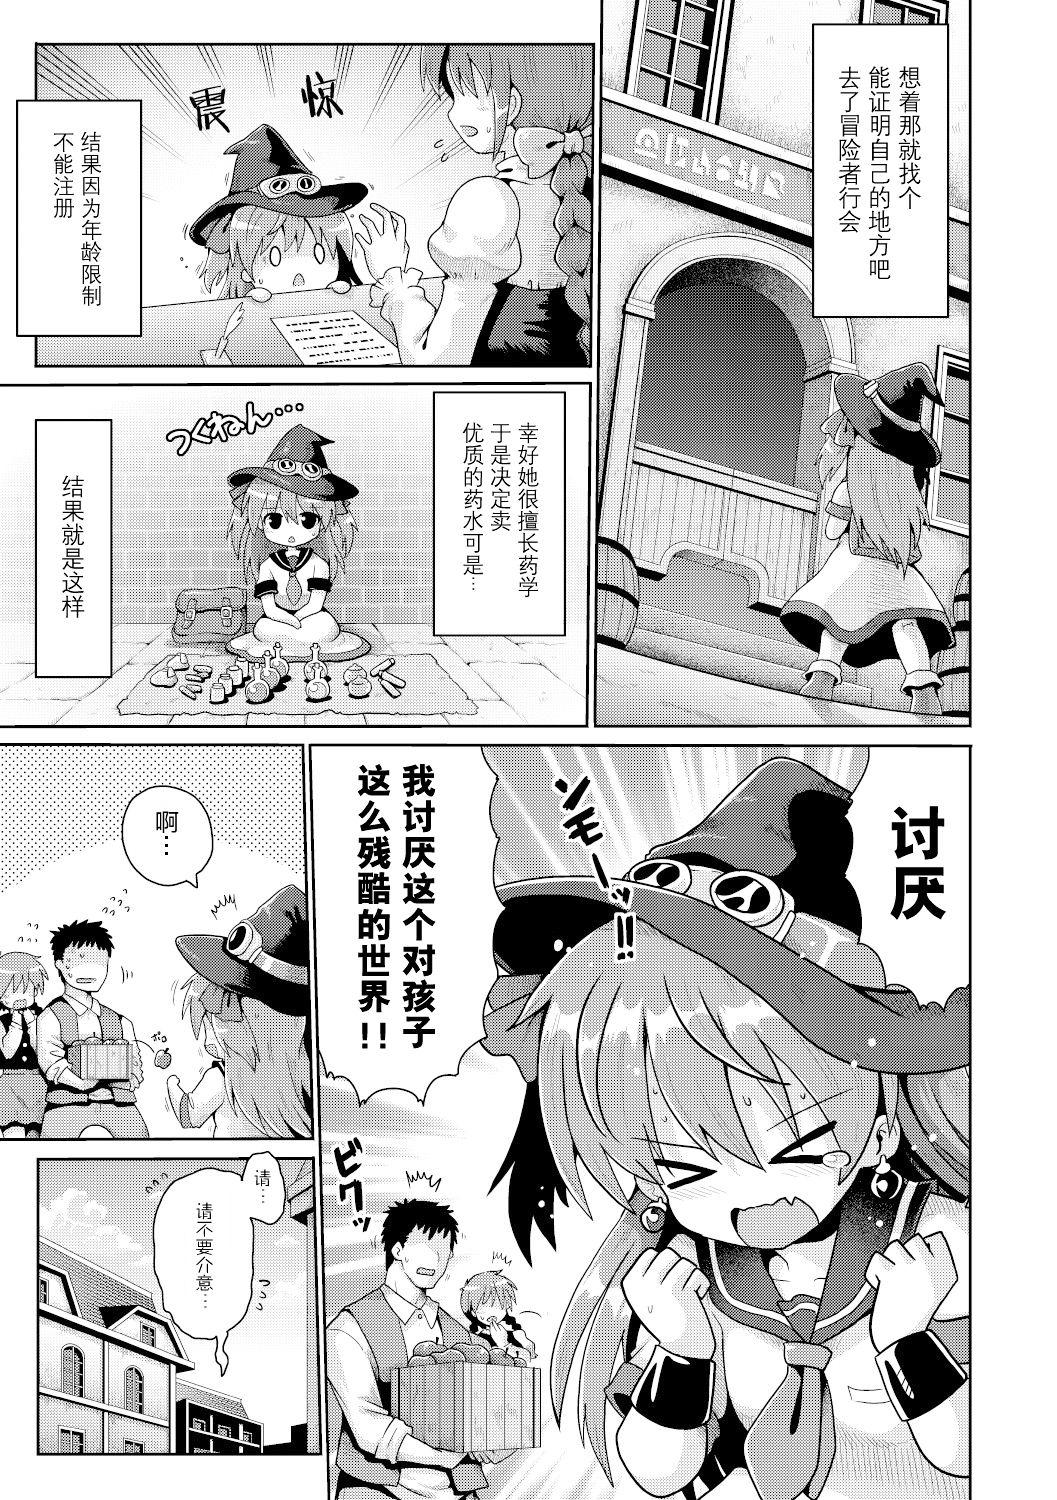 Spying Tensai mado shojo no yuutsu Rub - Page 4